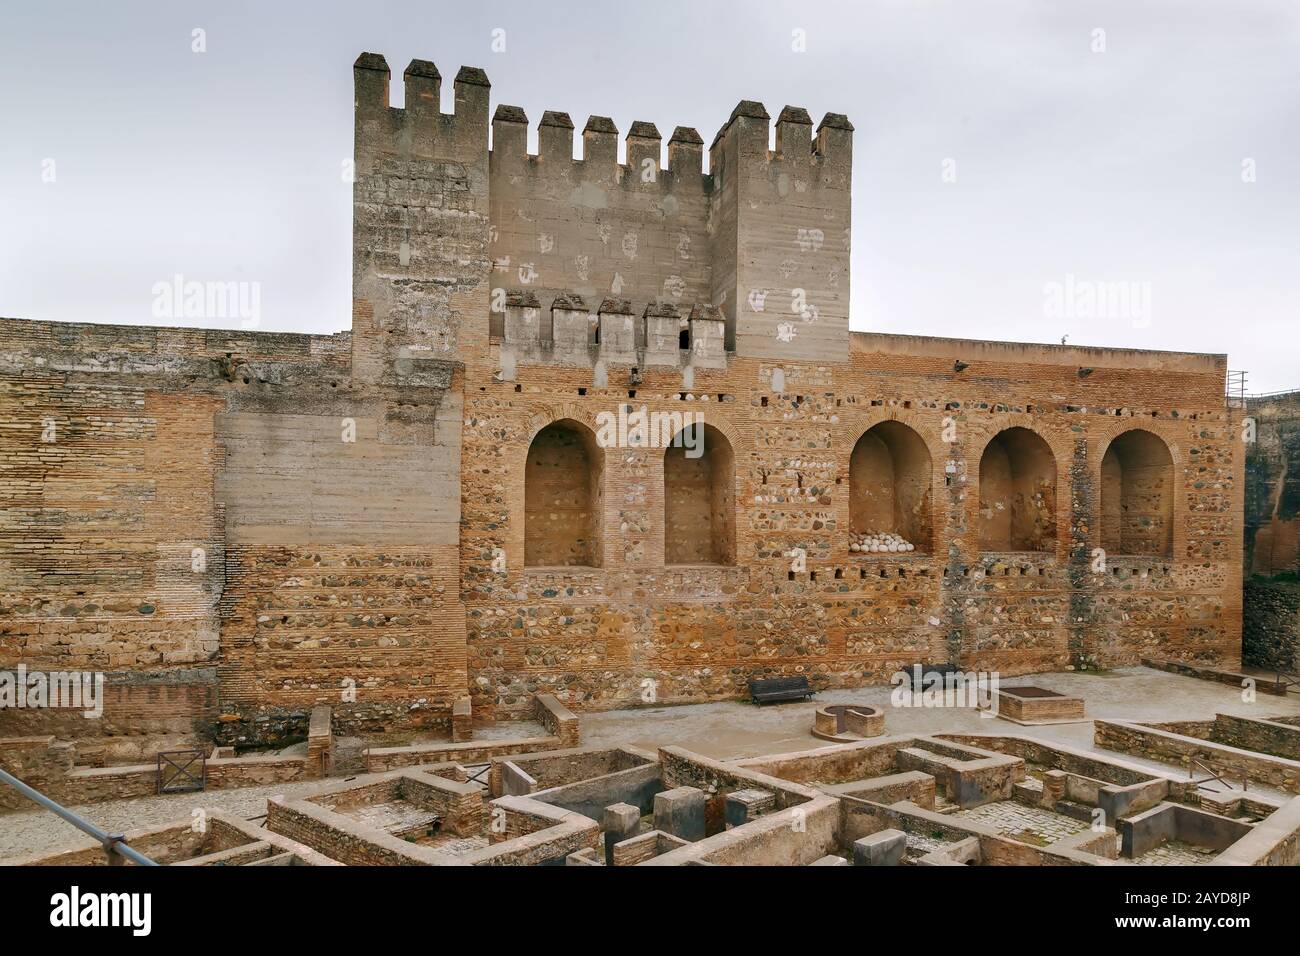 Alcazaba fortress, Granada, Spain Stock Photo